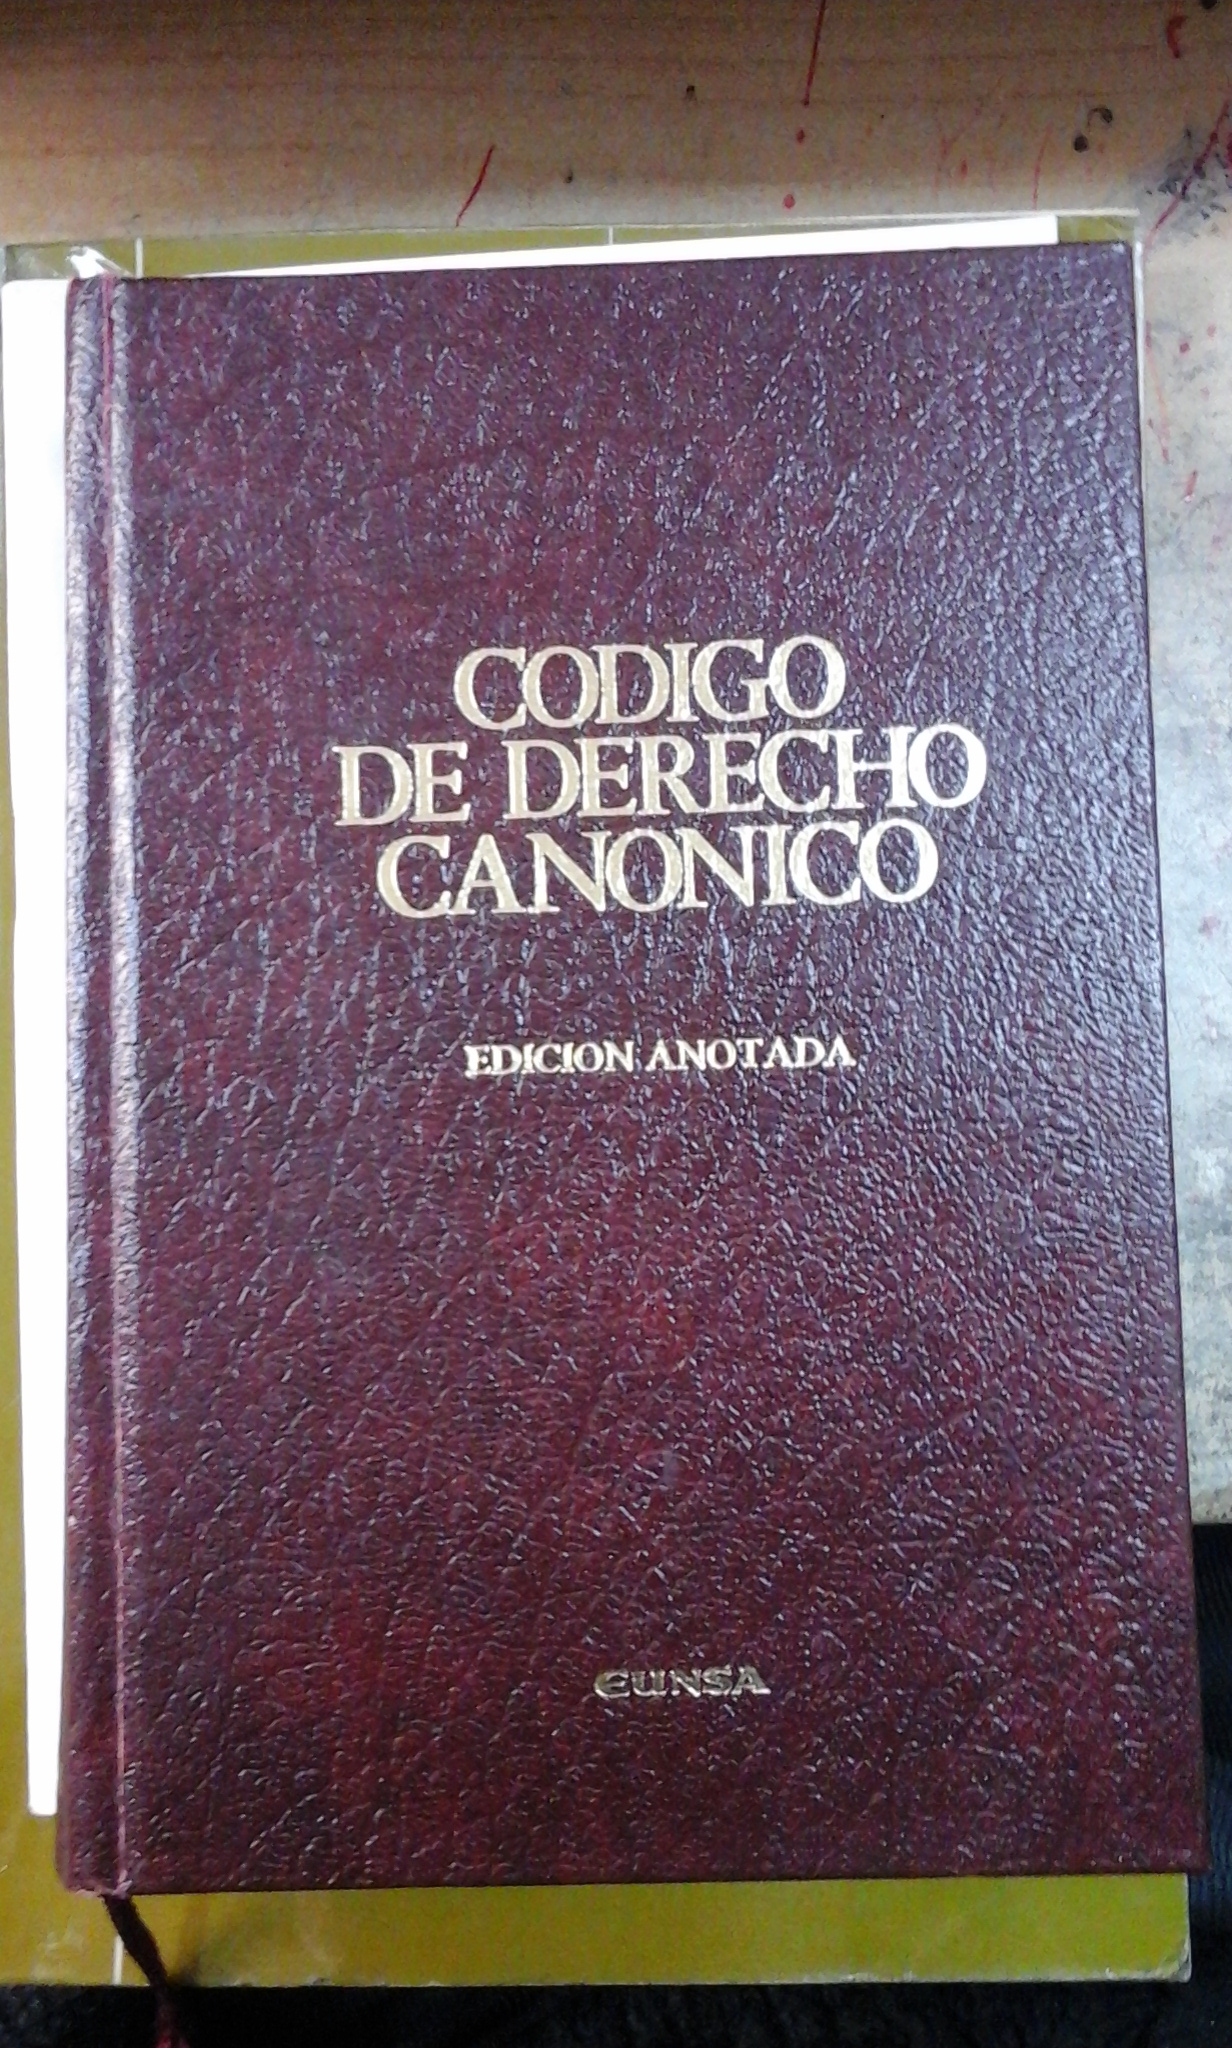 CÓDIGO DE DERECHO CANÓNICO. Edición bilingüe y anotada (Barcelona, 1987) - Instituto Martín de Azpilcueta/ varios autores